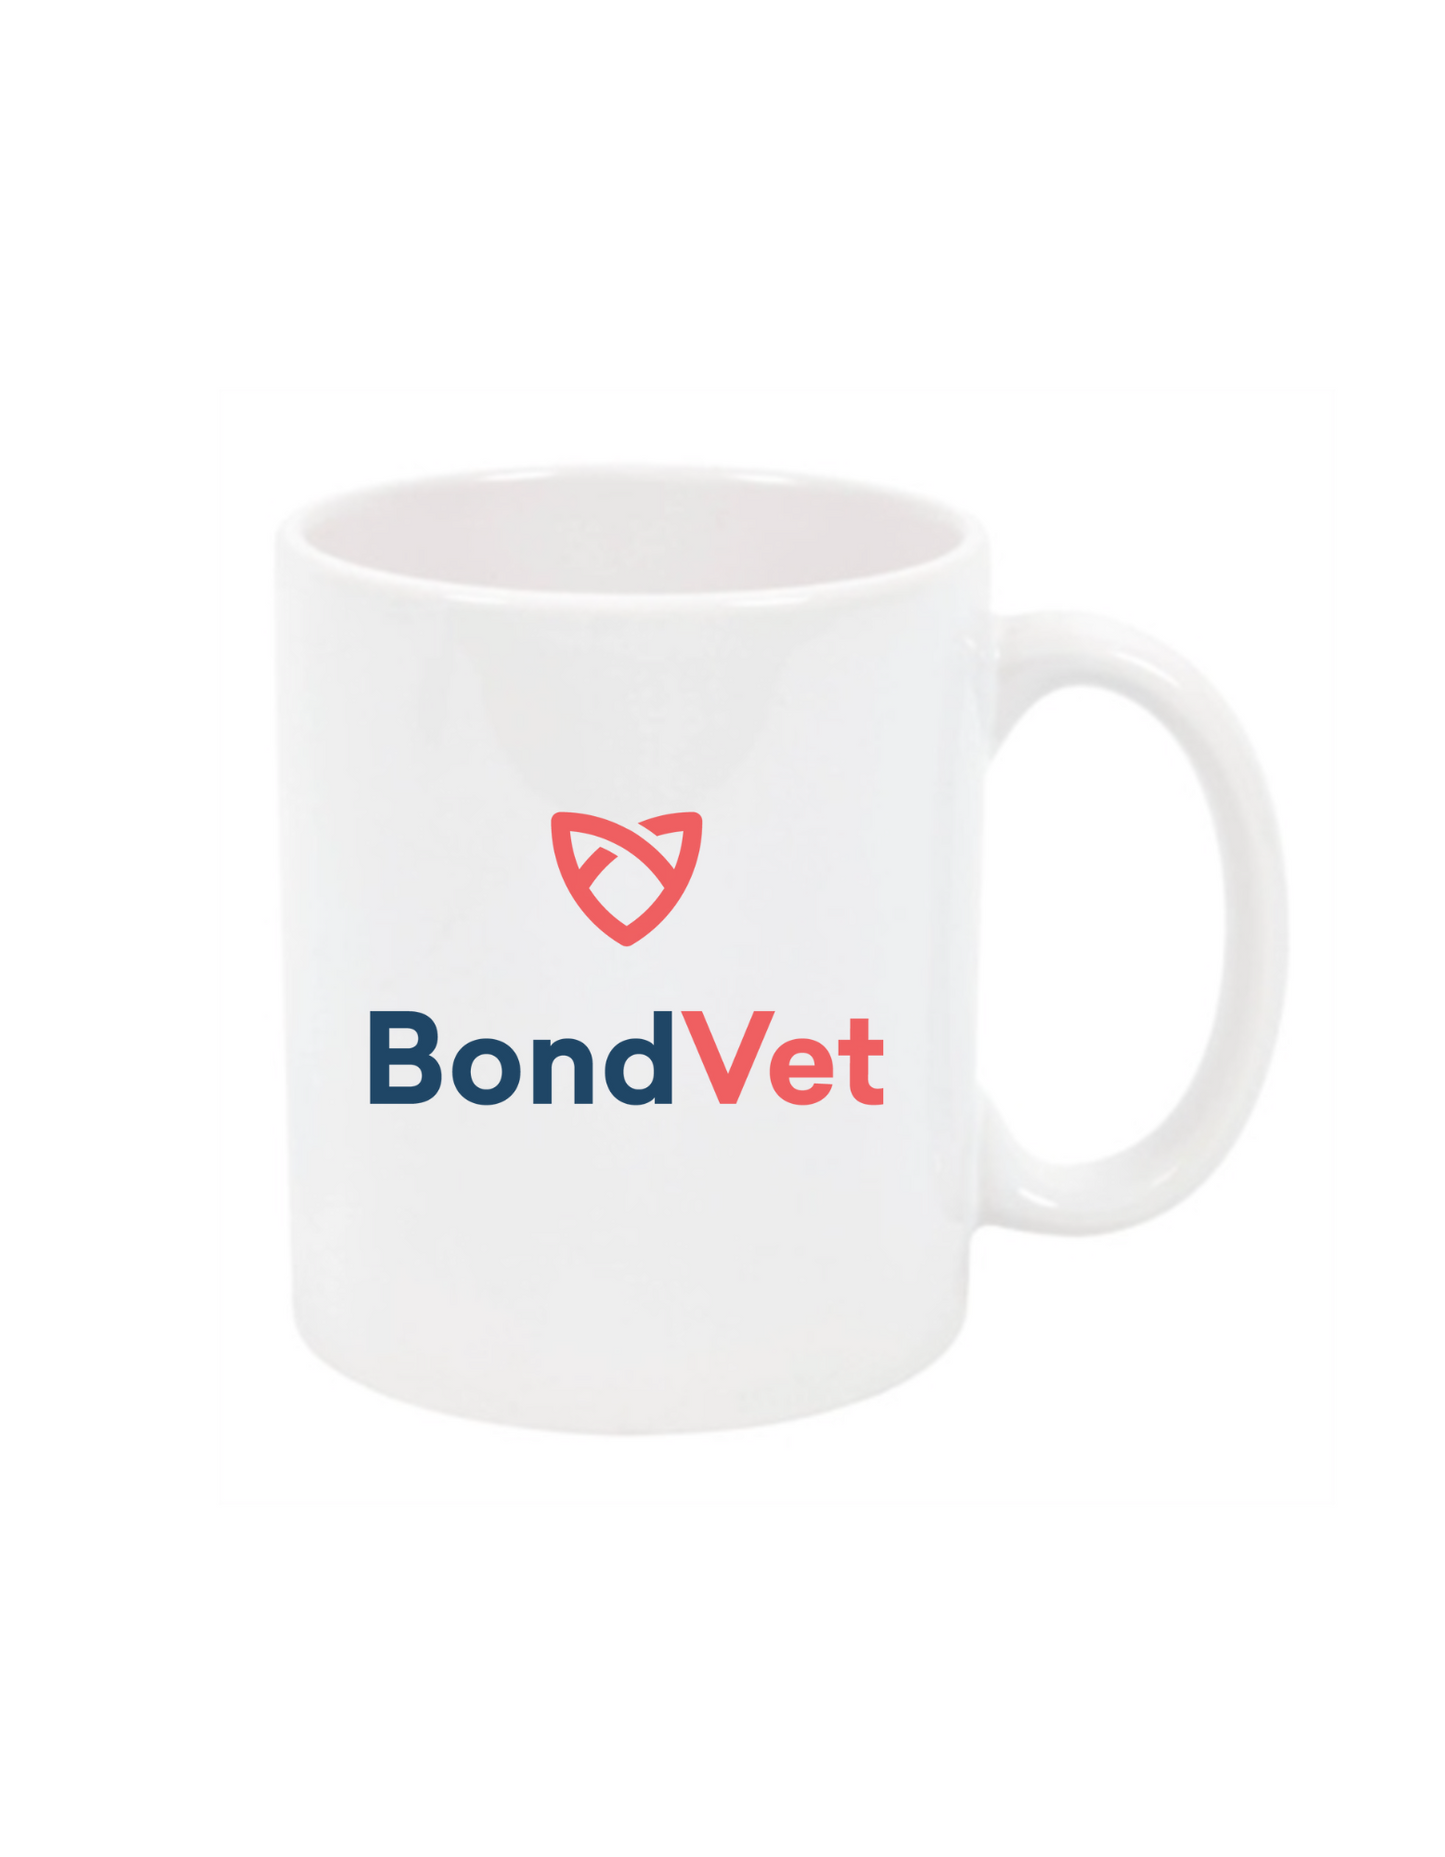 Bond Vet Mug